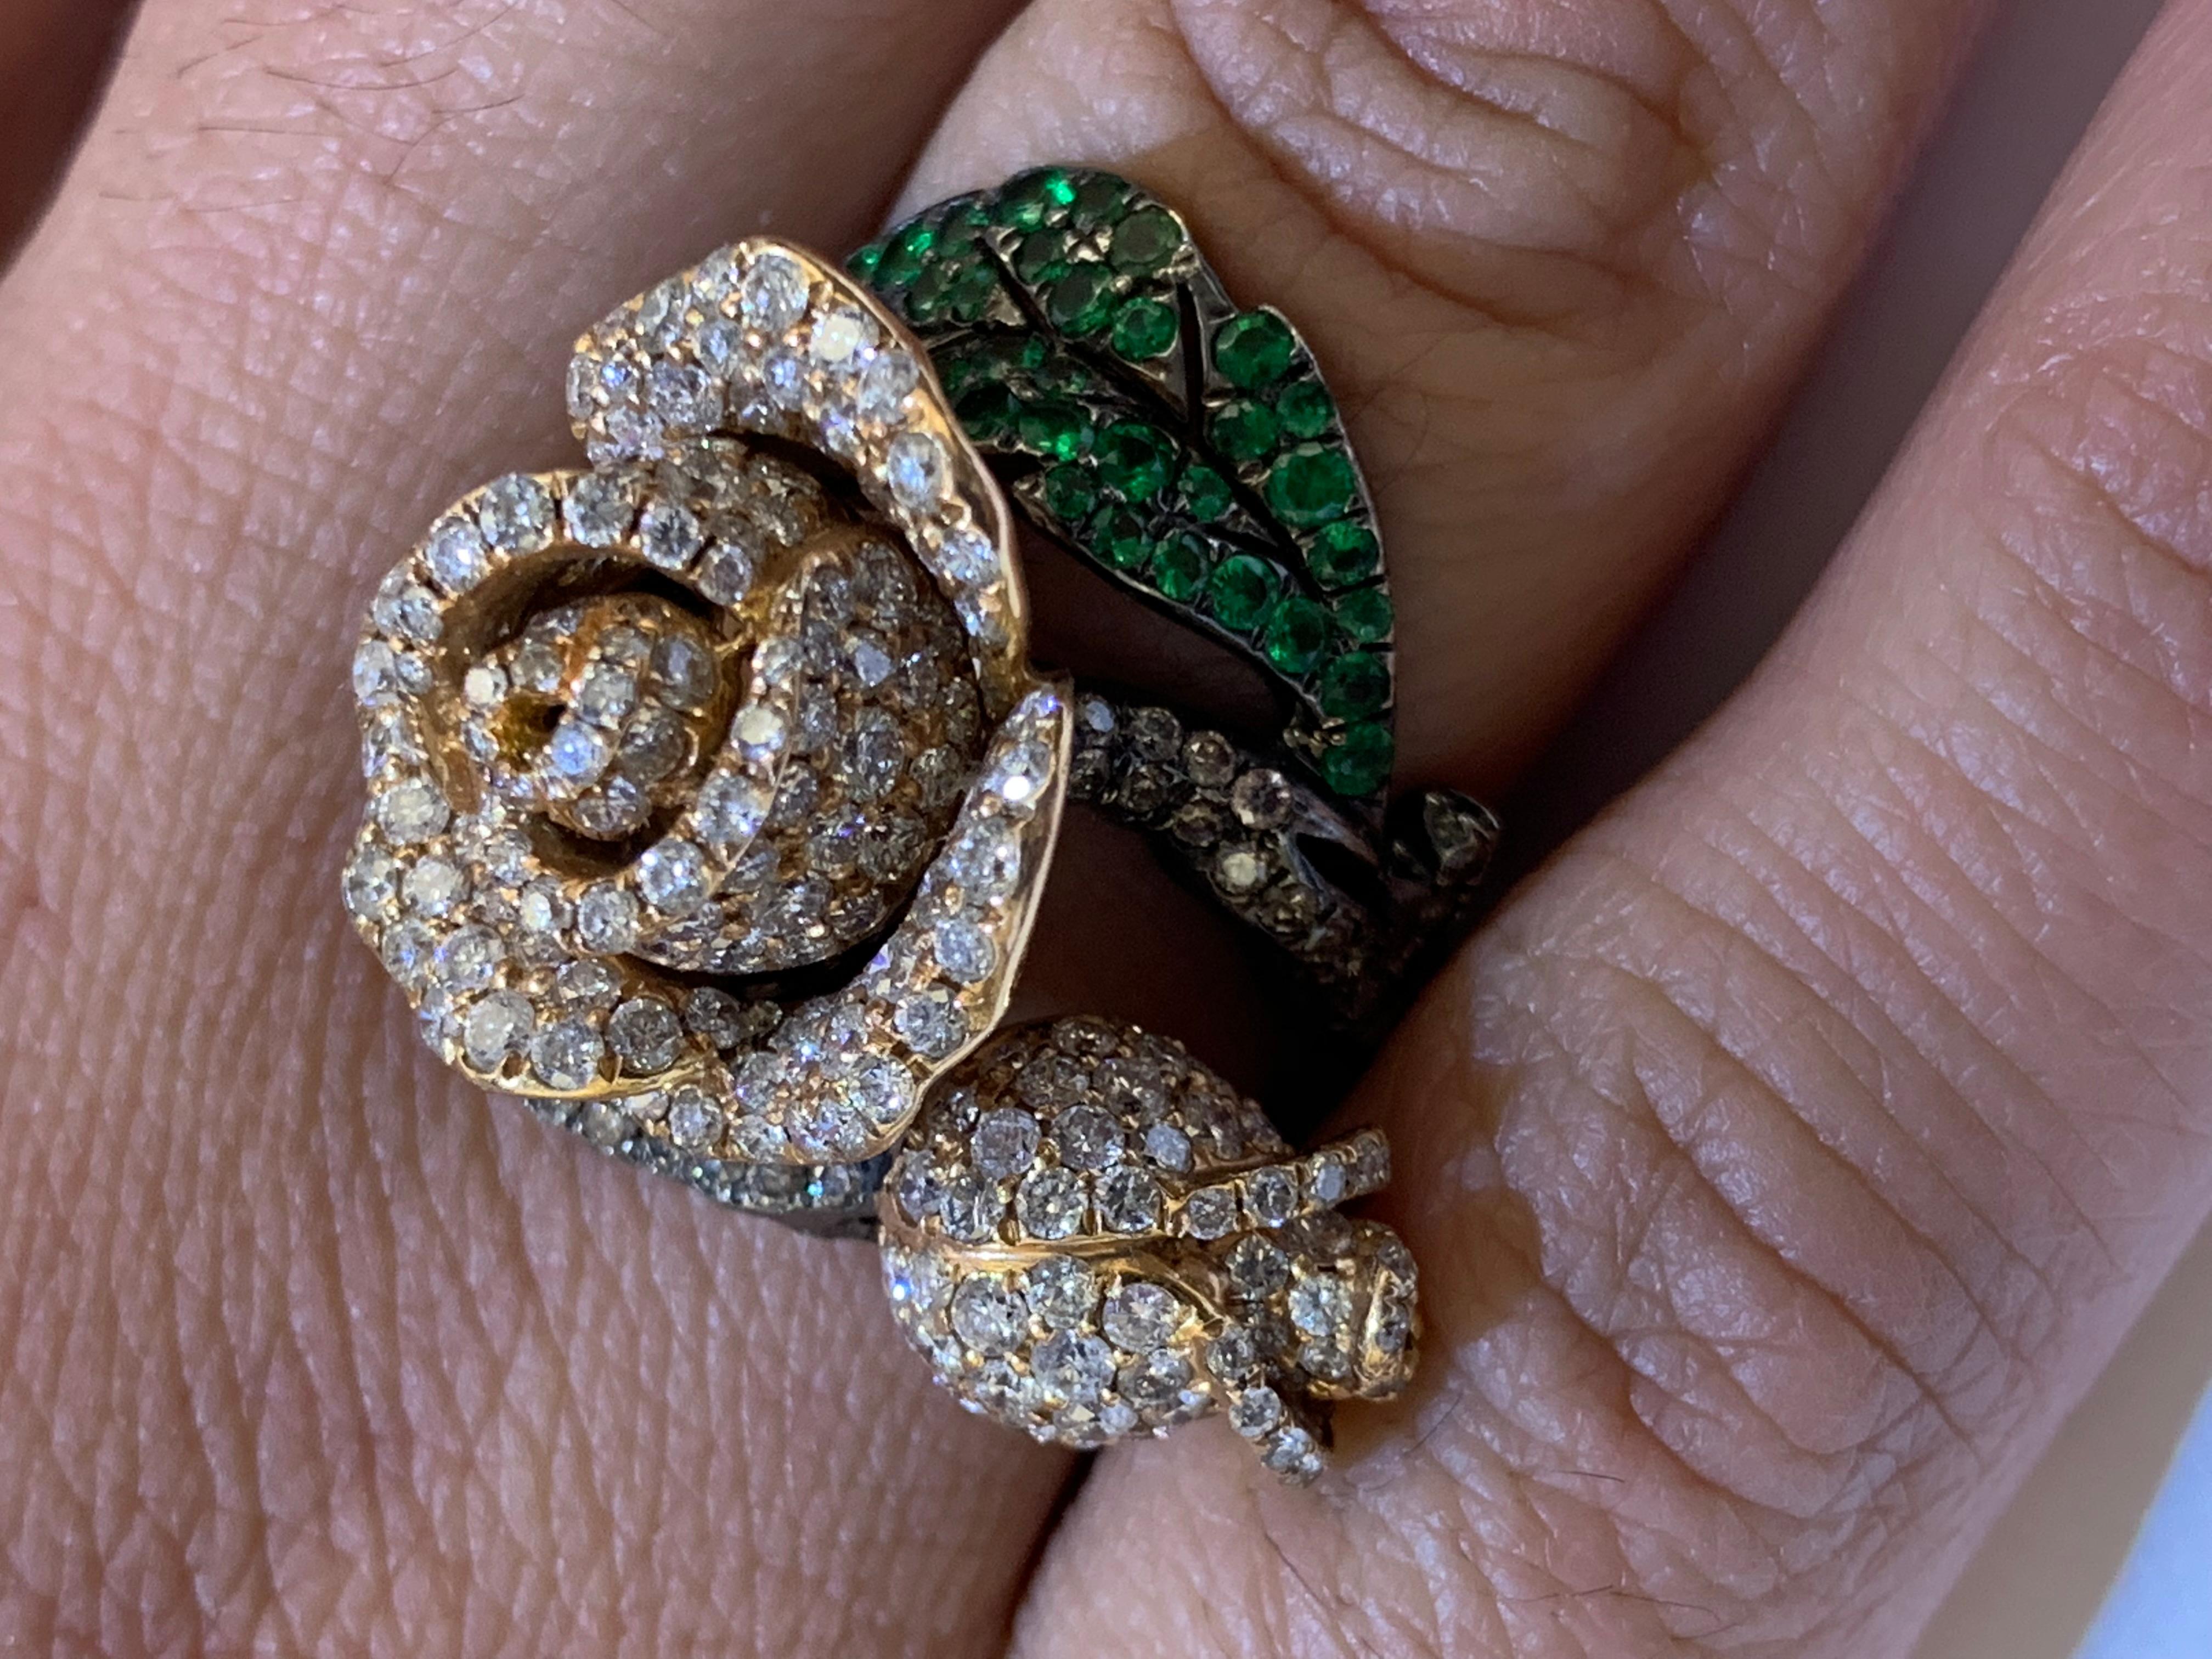 Dieser rosafarbene Diamantring aus 18 Karat Gold ist einer der schönsten Ringe in unserer Collection'S.

Ringgröße: 7 (kann angepasst werden)

18KT: 13,85g
Diamant: 0,9ct